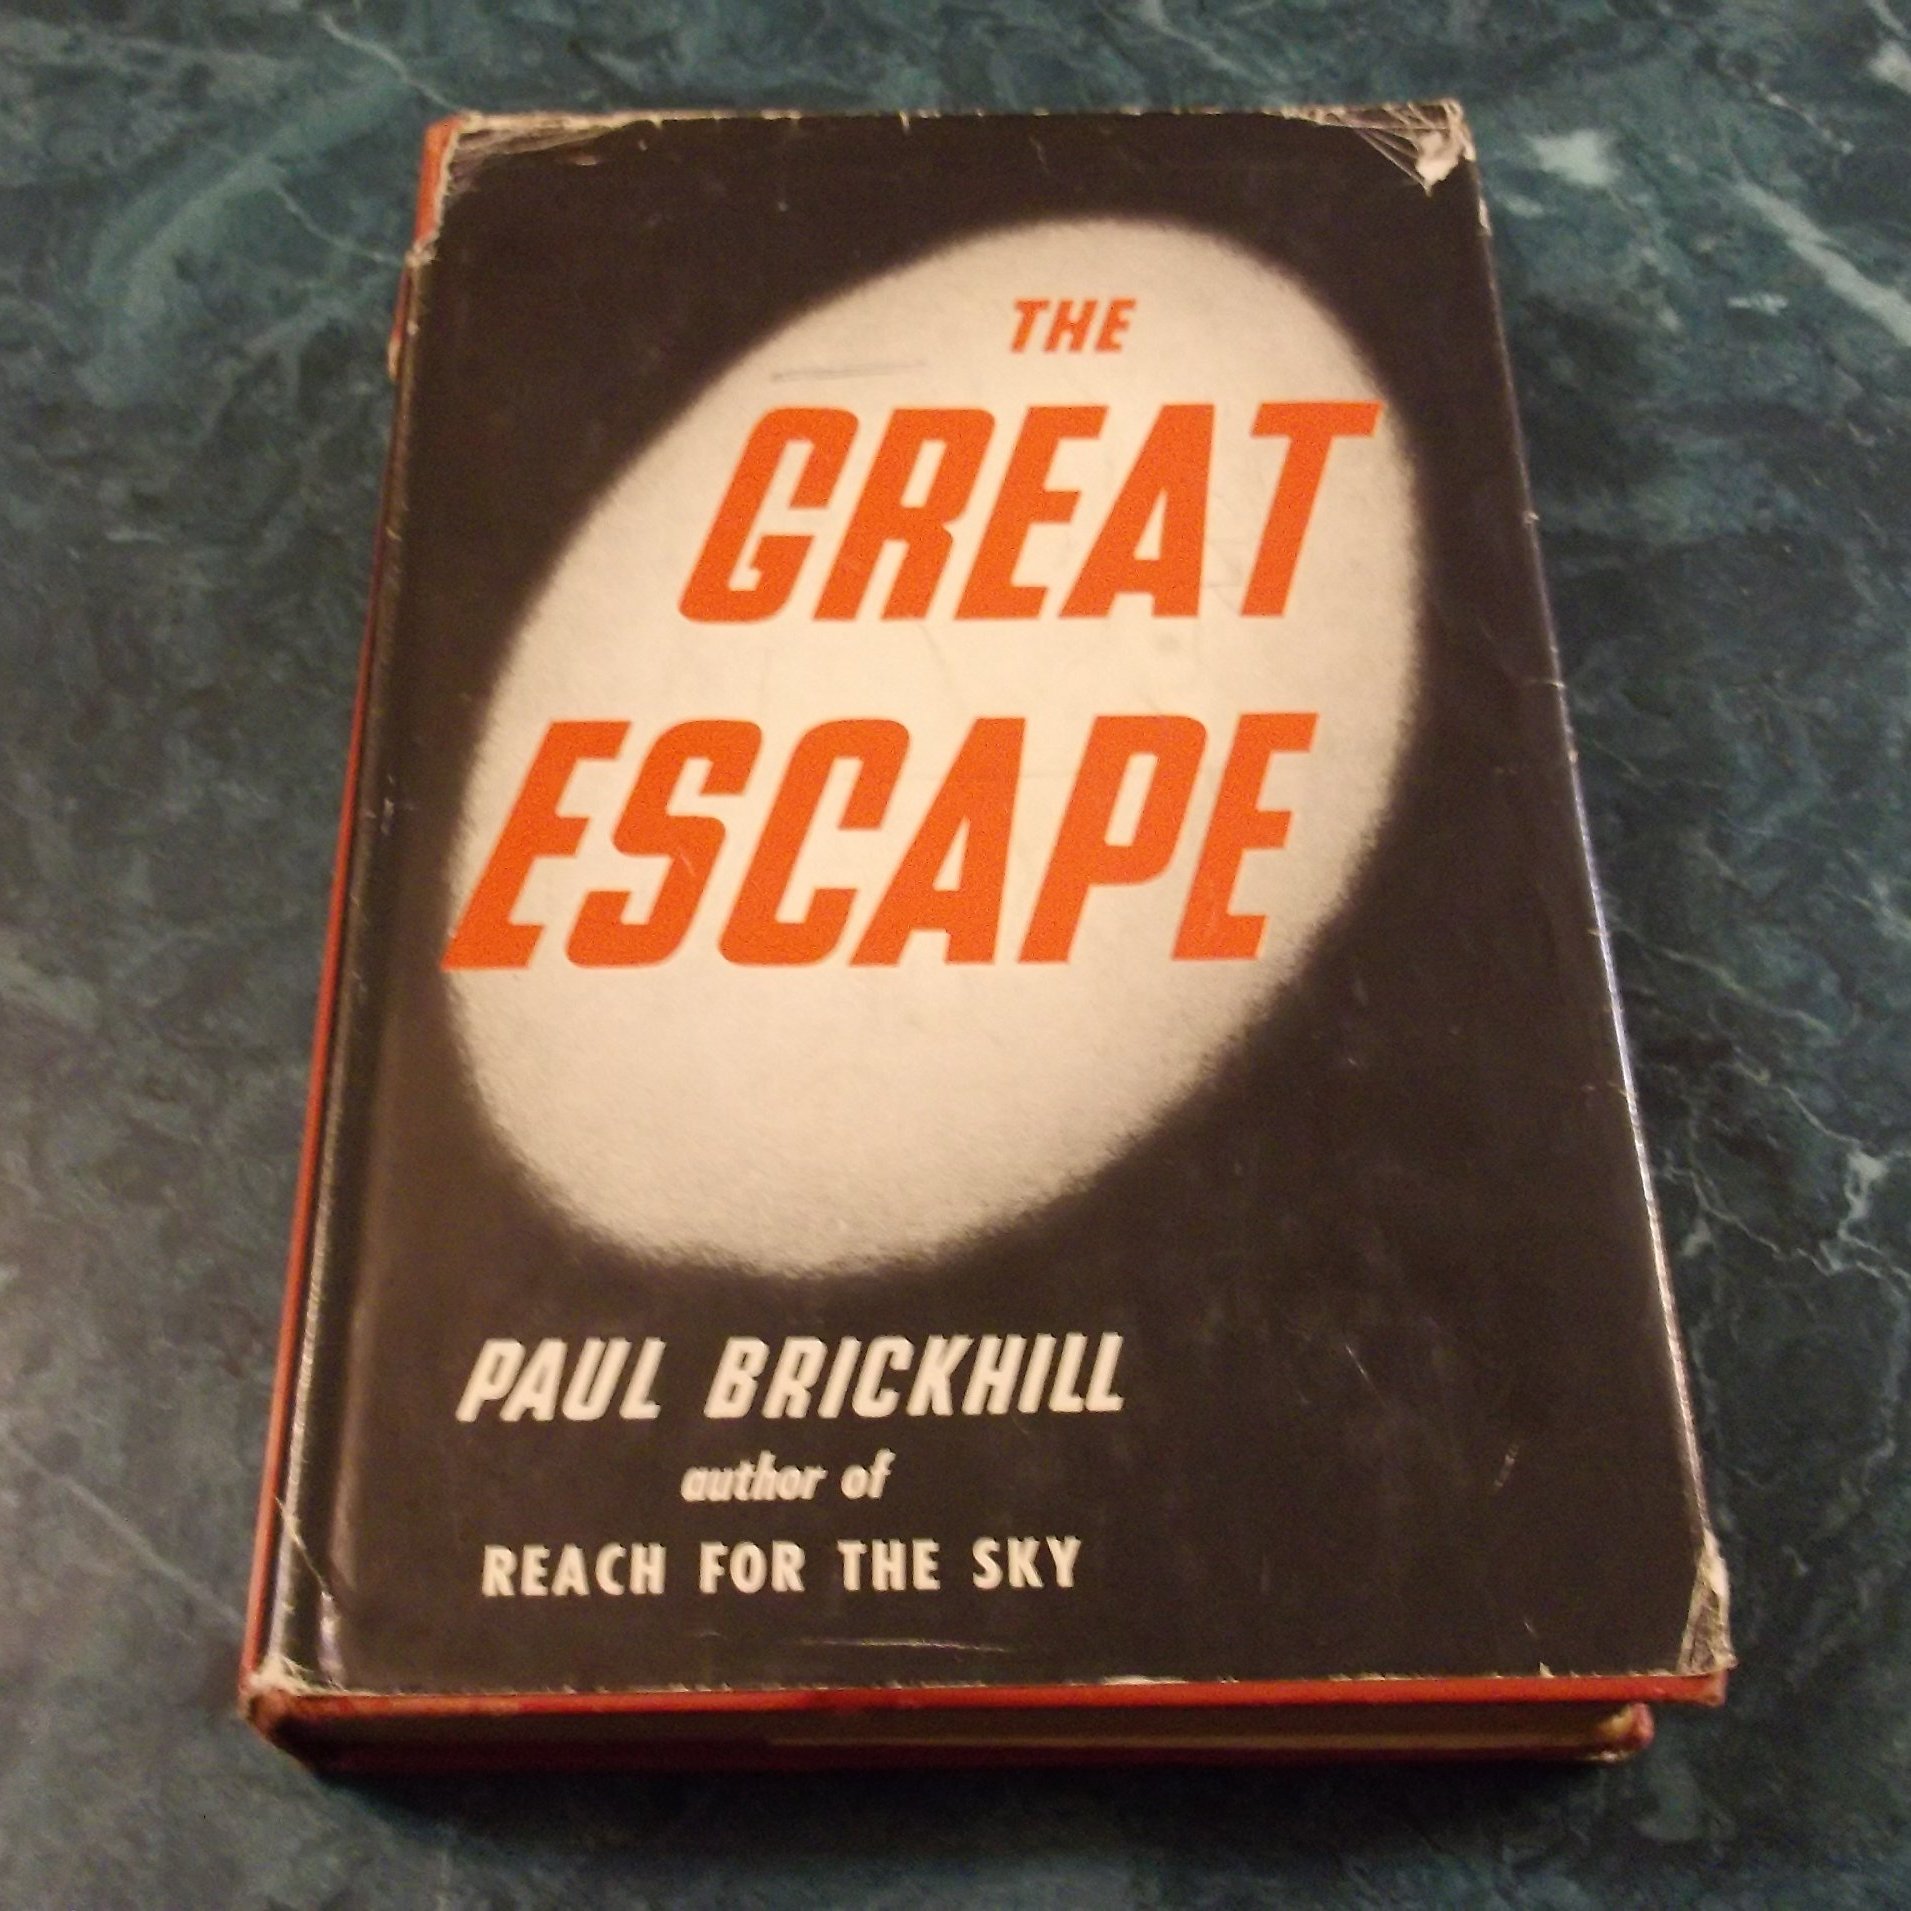 The great escape book